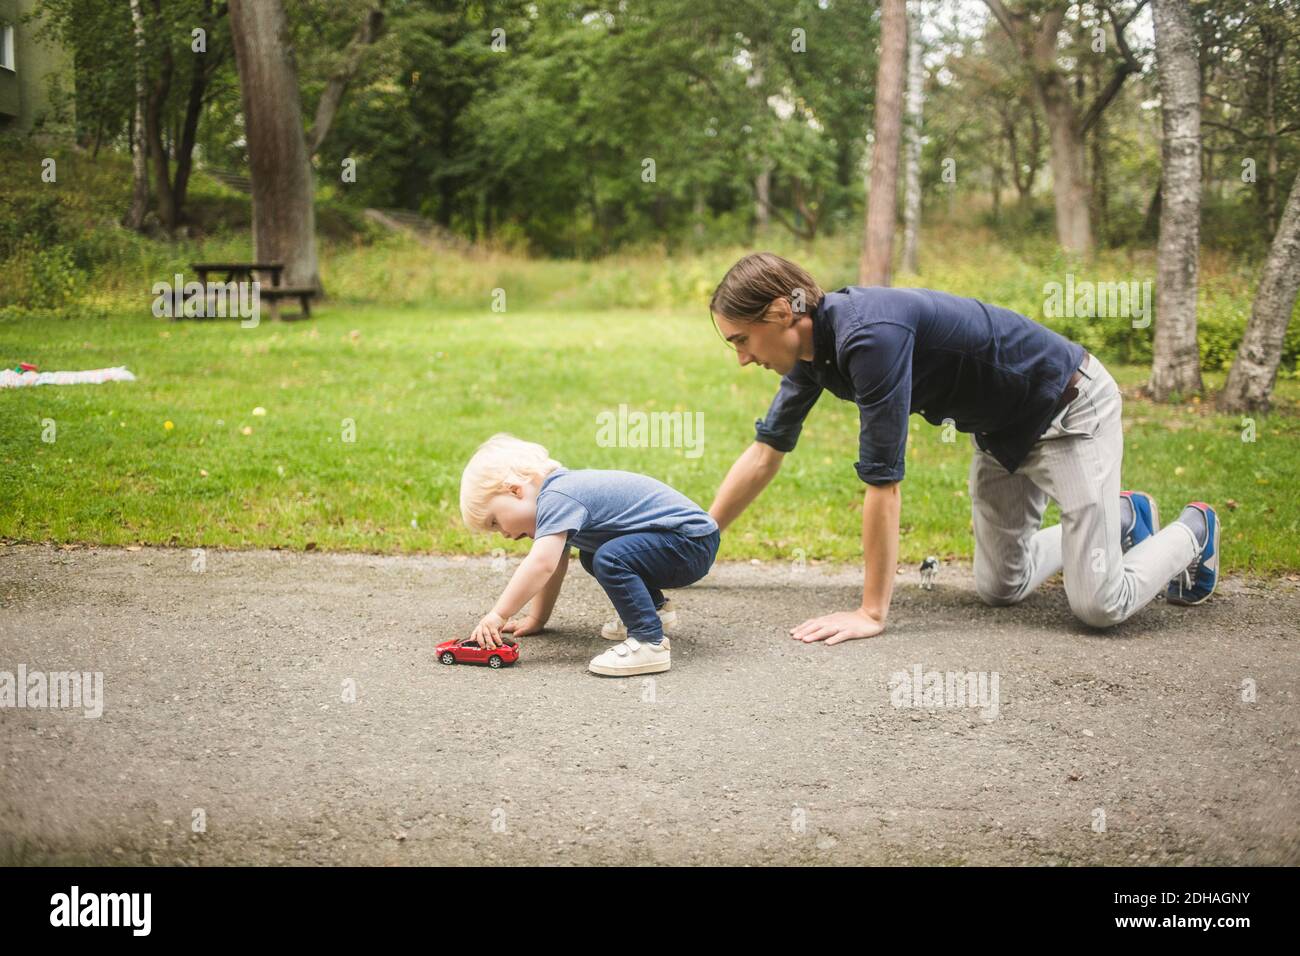 Vater kniet, während Sohn mit Spielzeugauto auf dem Fußweg spielt Gegen Pflanzen im Park Stockfoto